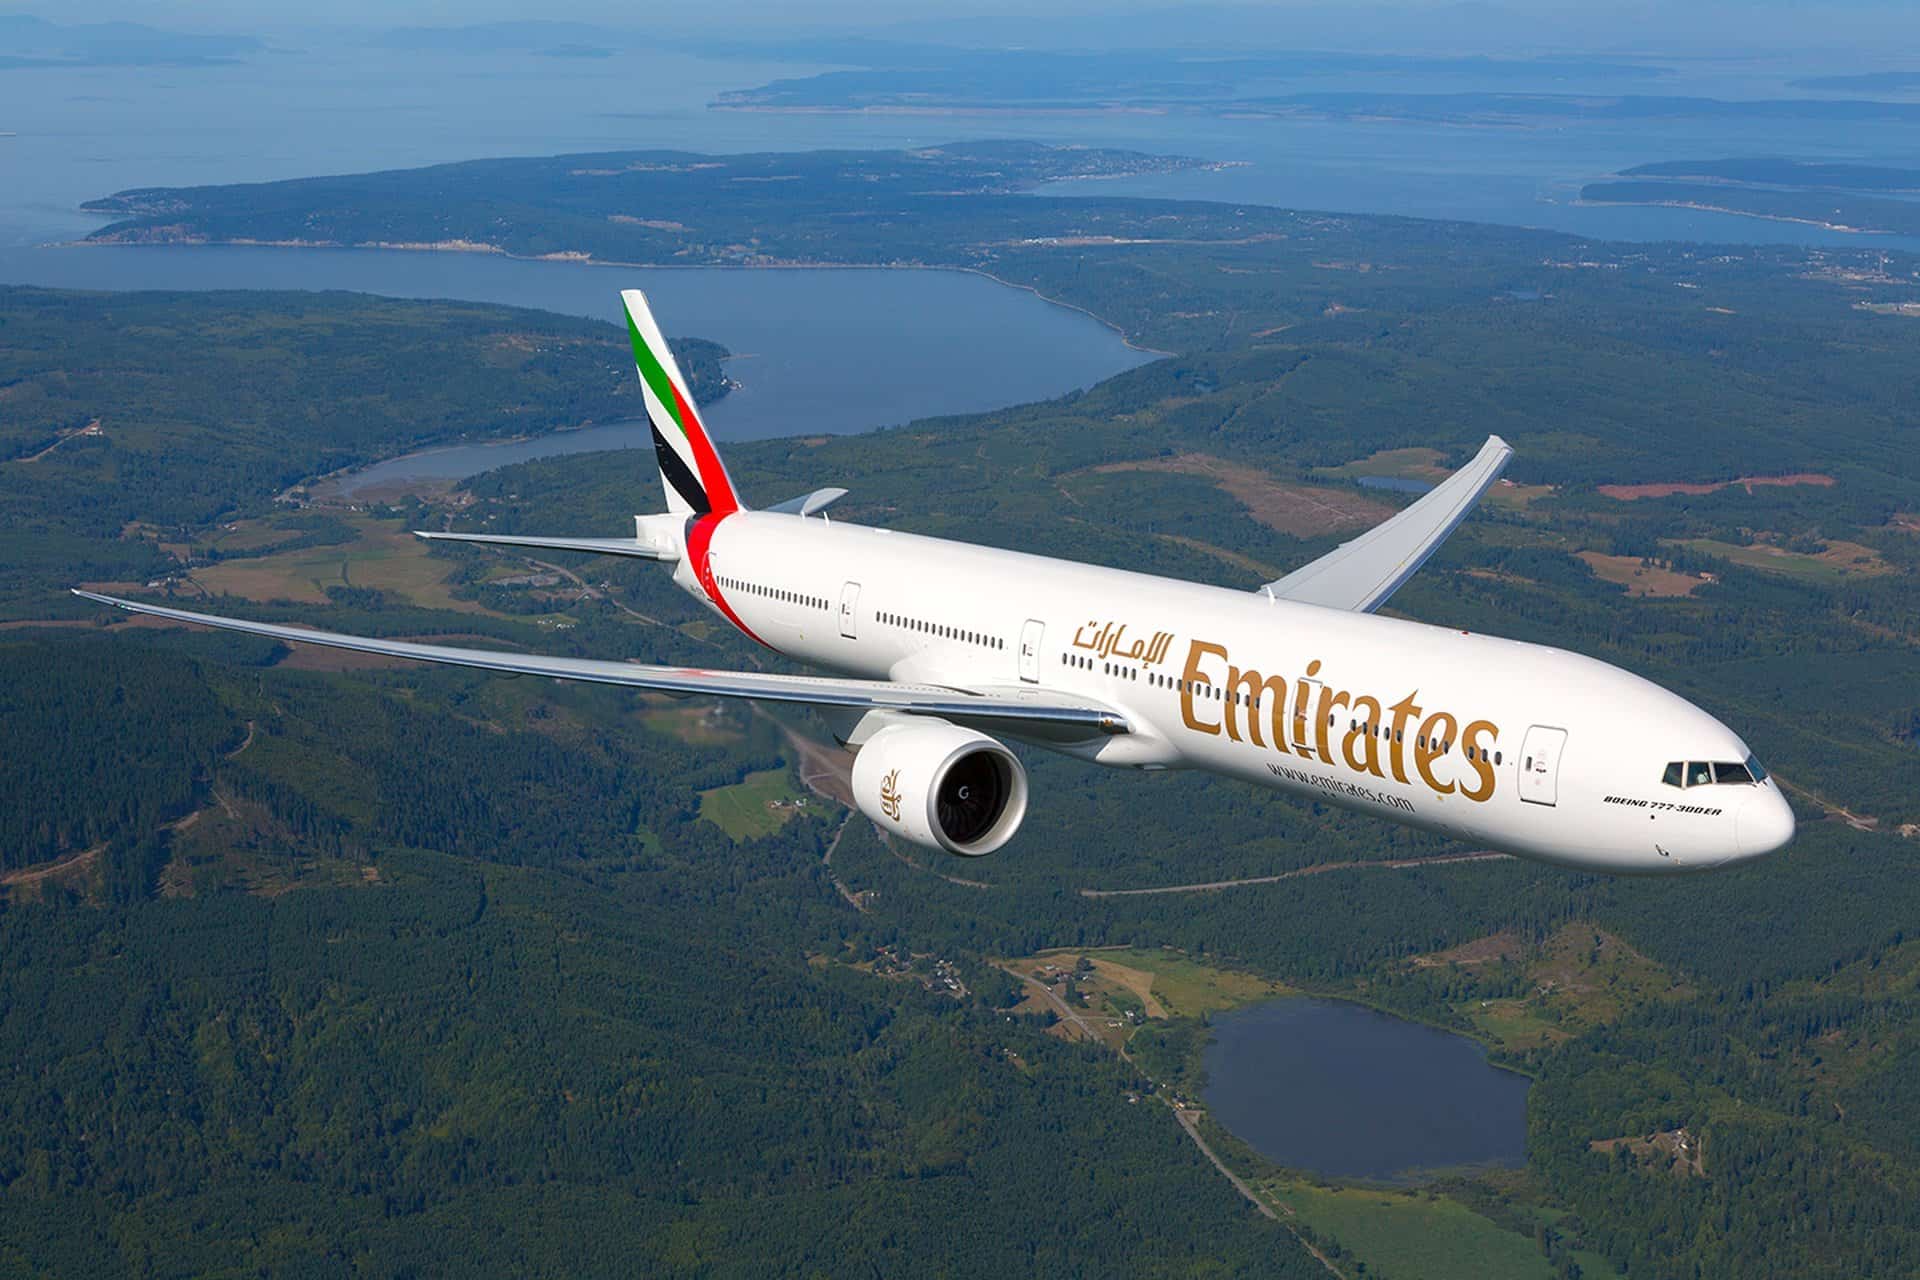 Vé máy bay đi Thụy Điển - Hãng hàng không Emirates Airlines